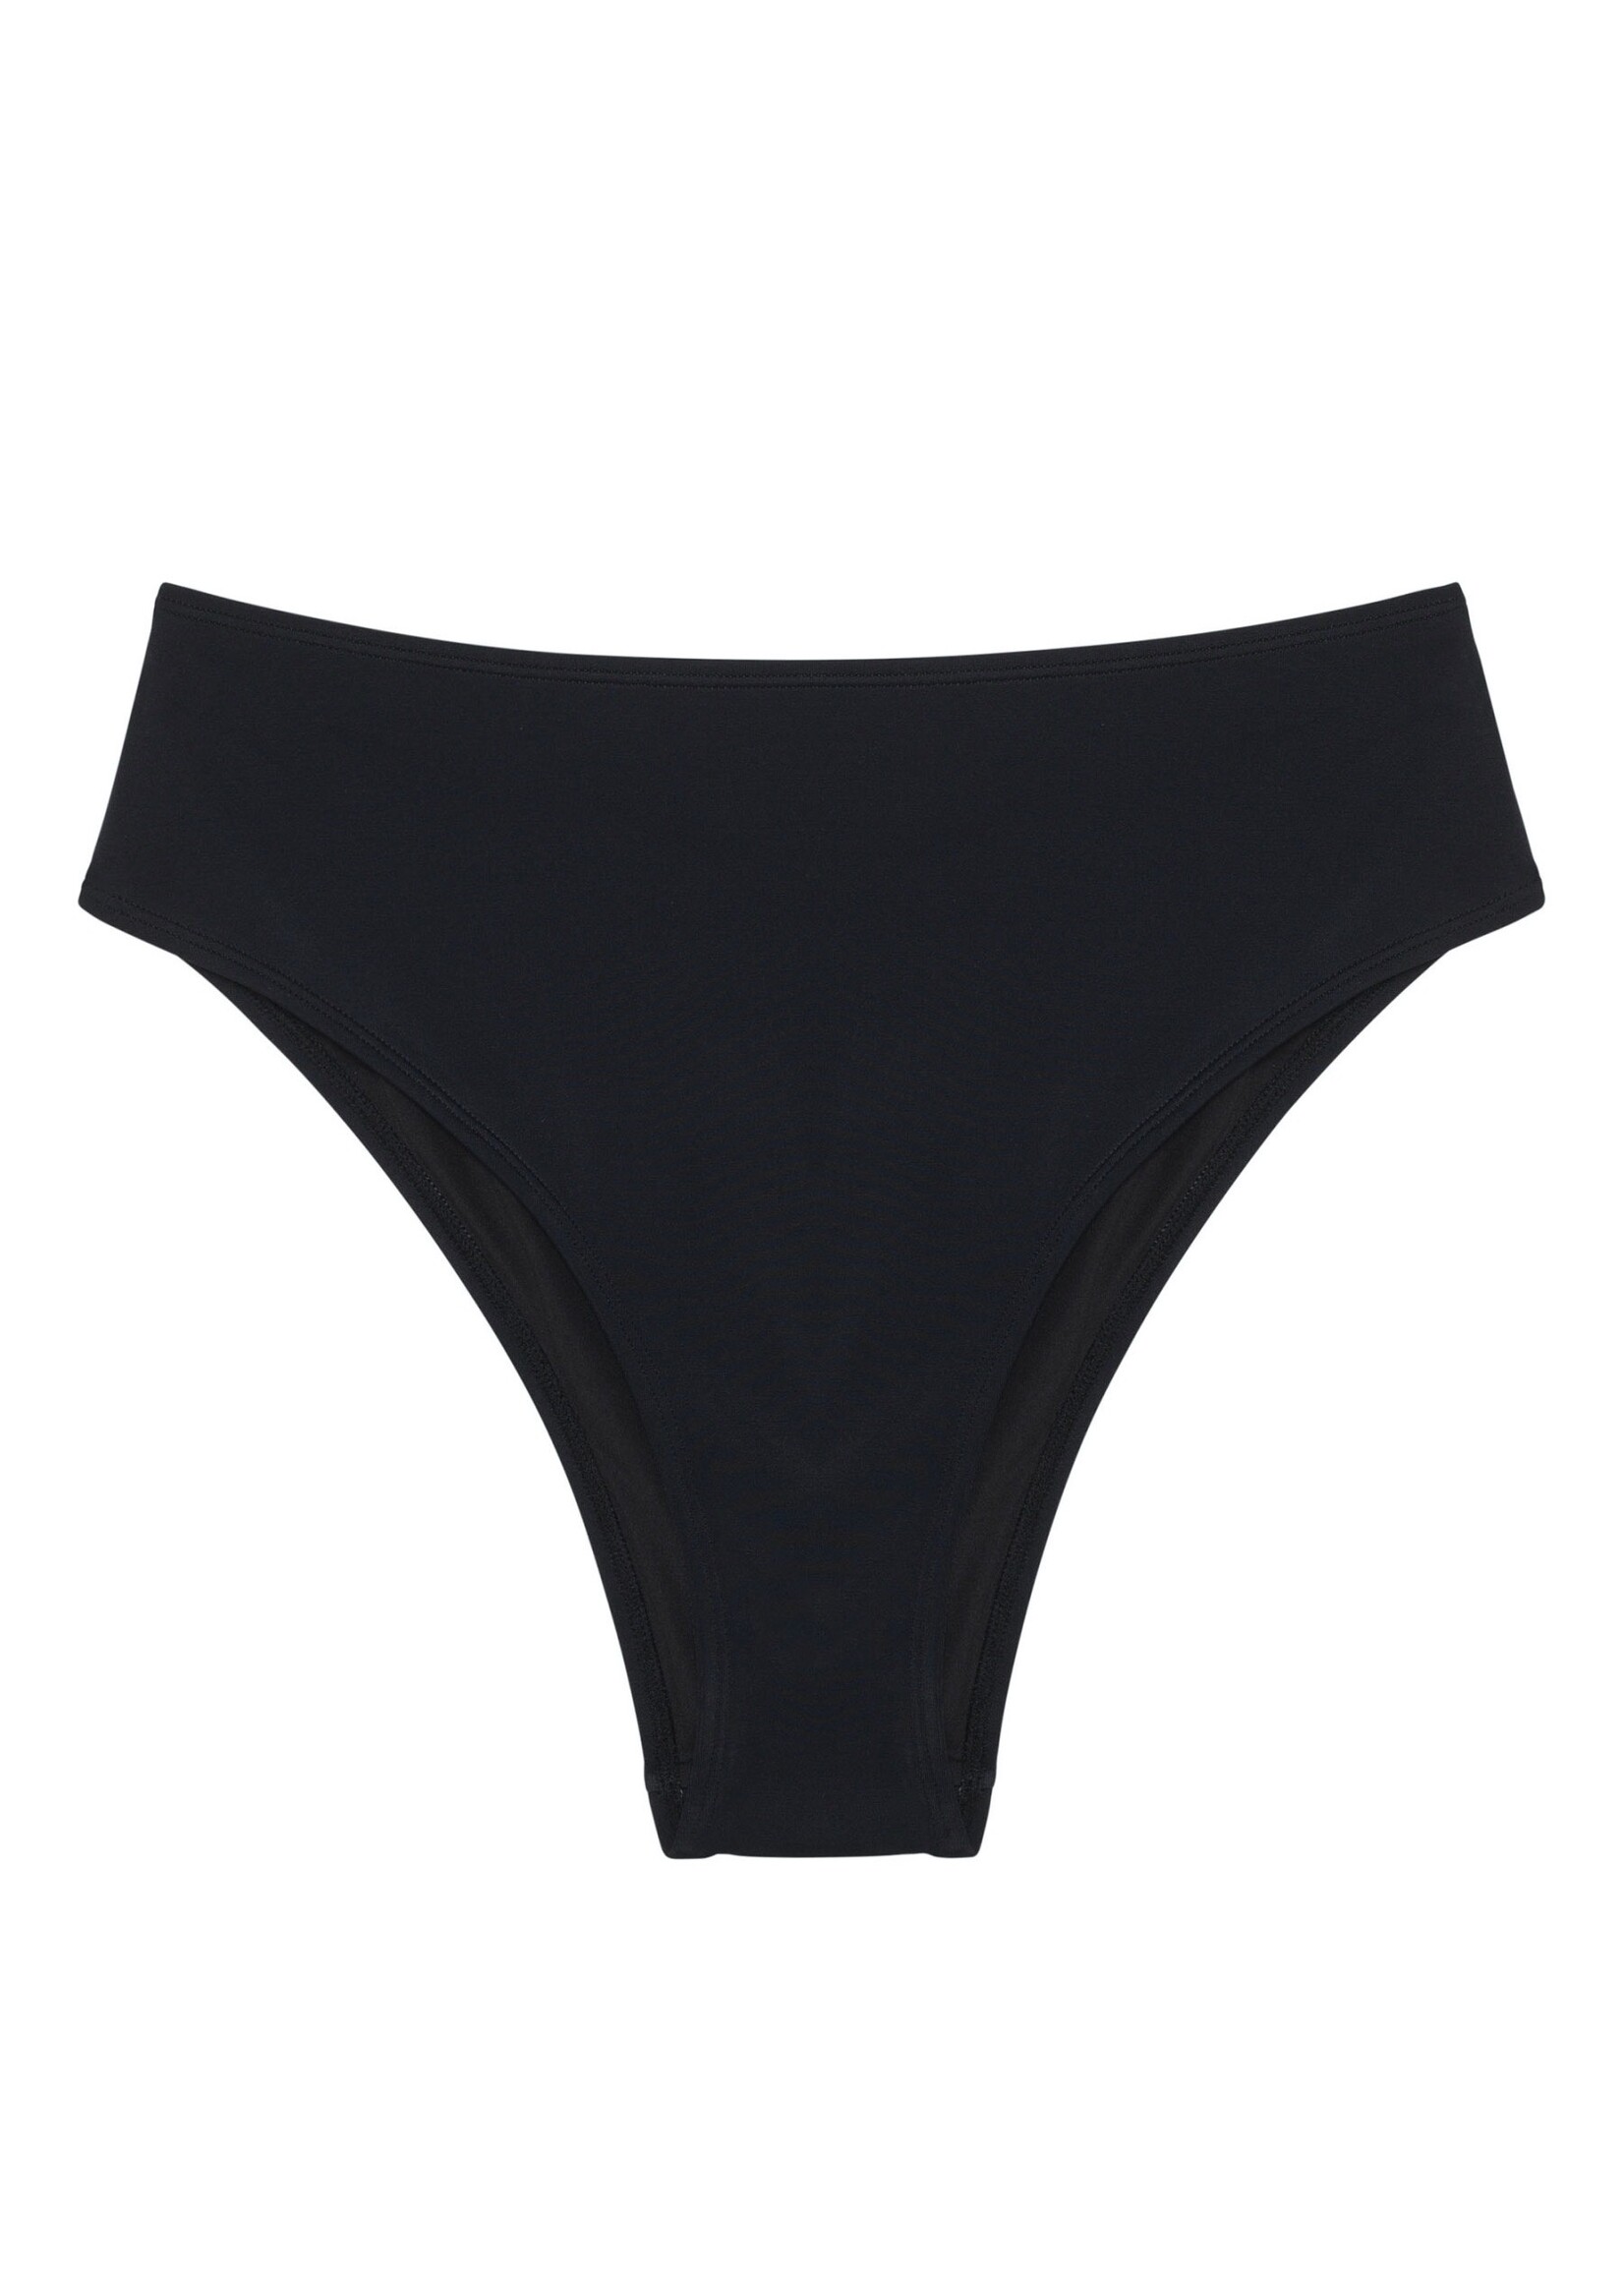 Blush Lingerie High waist bikini bottom "Dawn" by Blush Lingerie